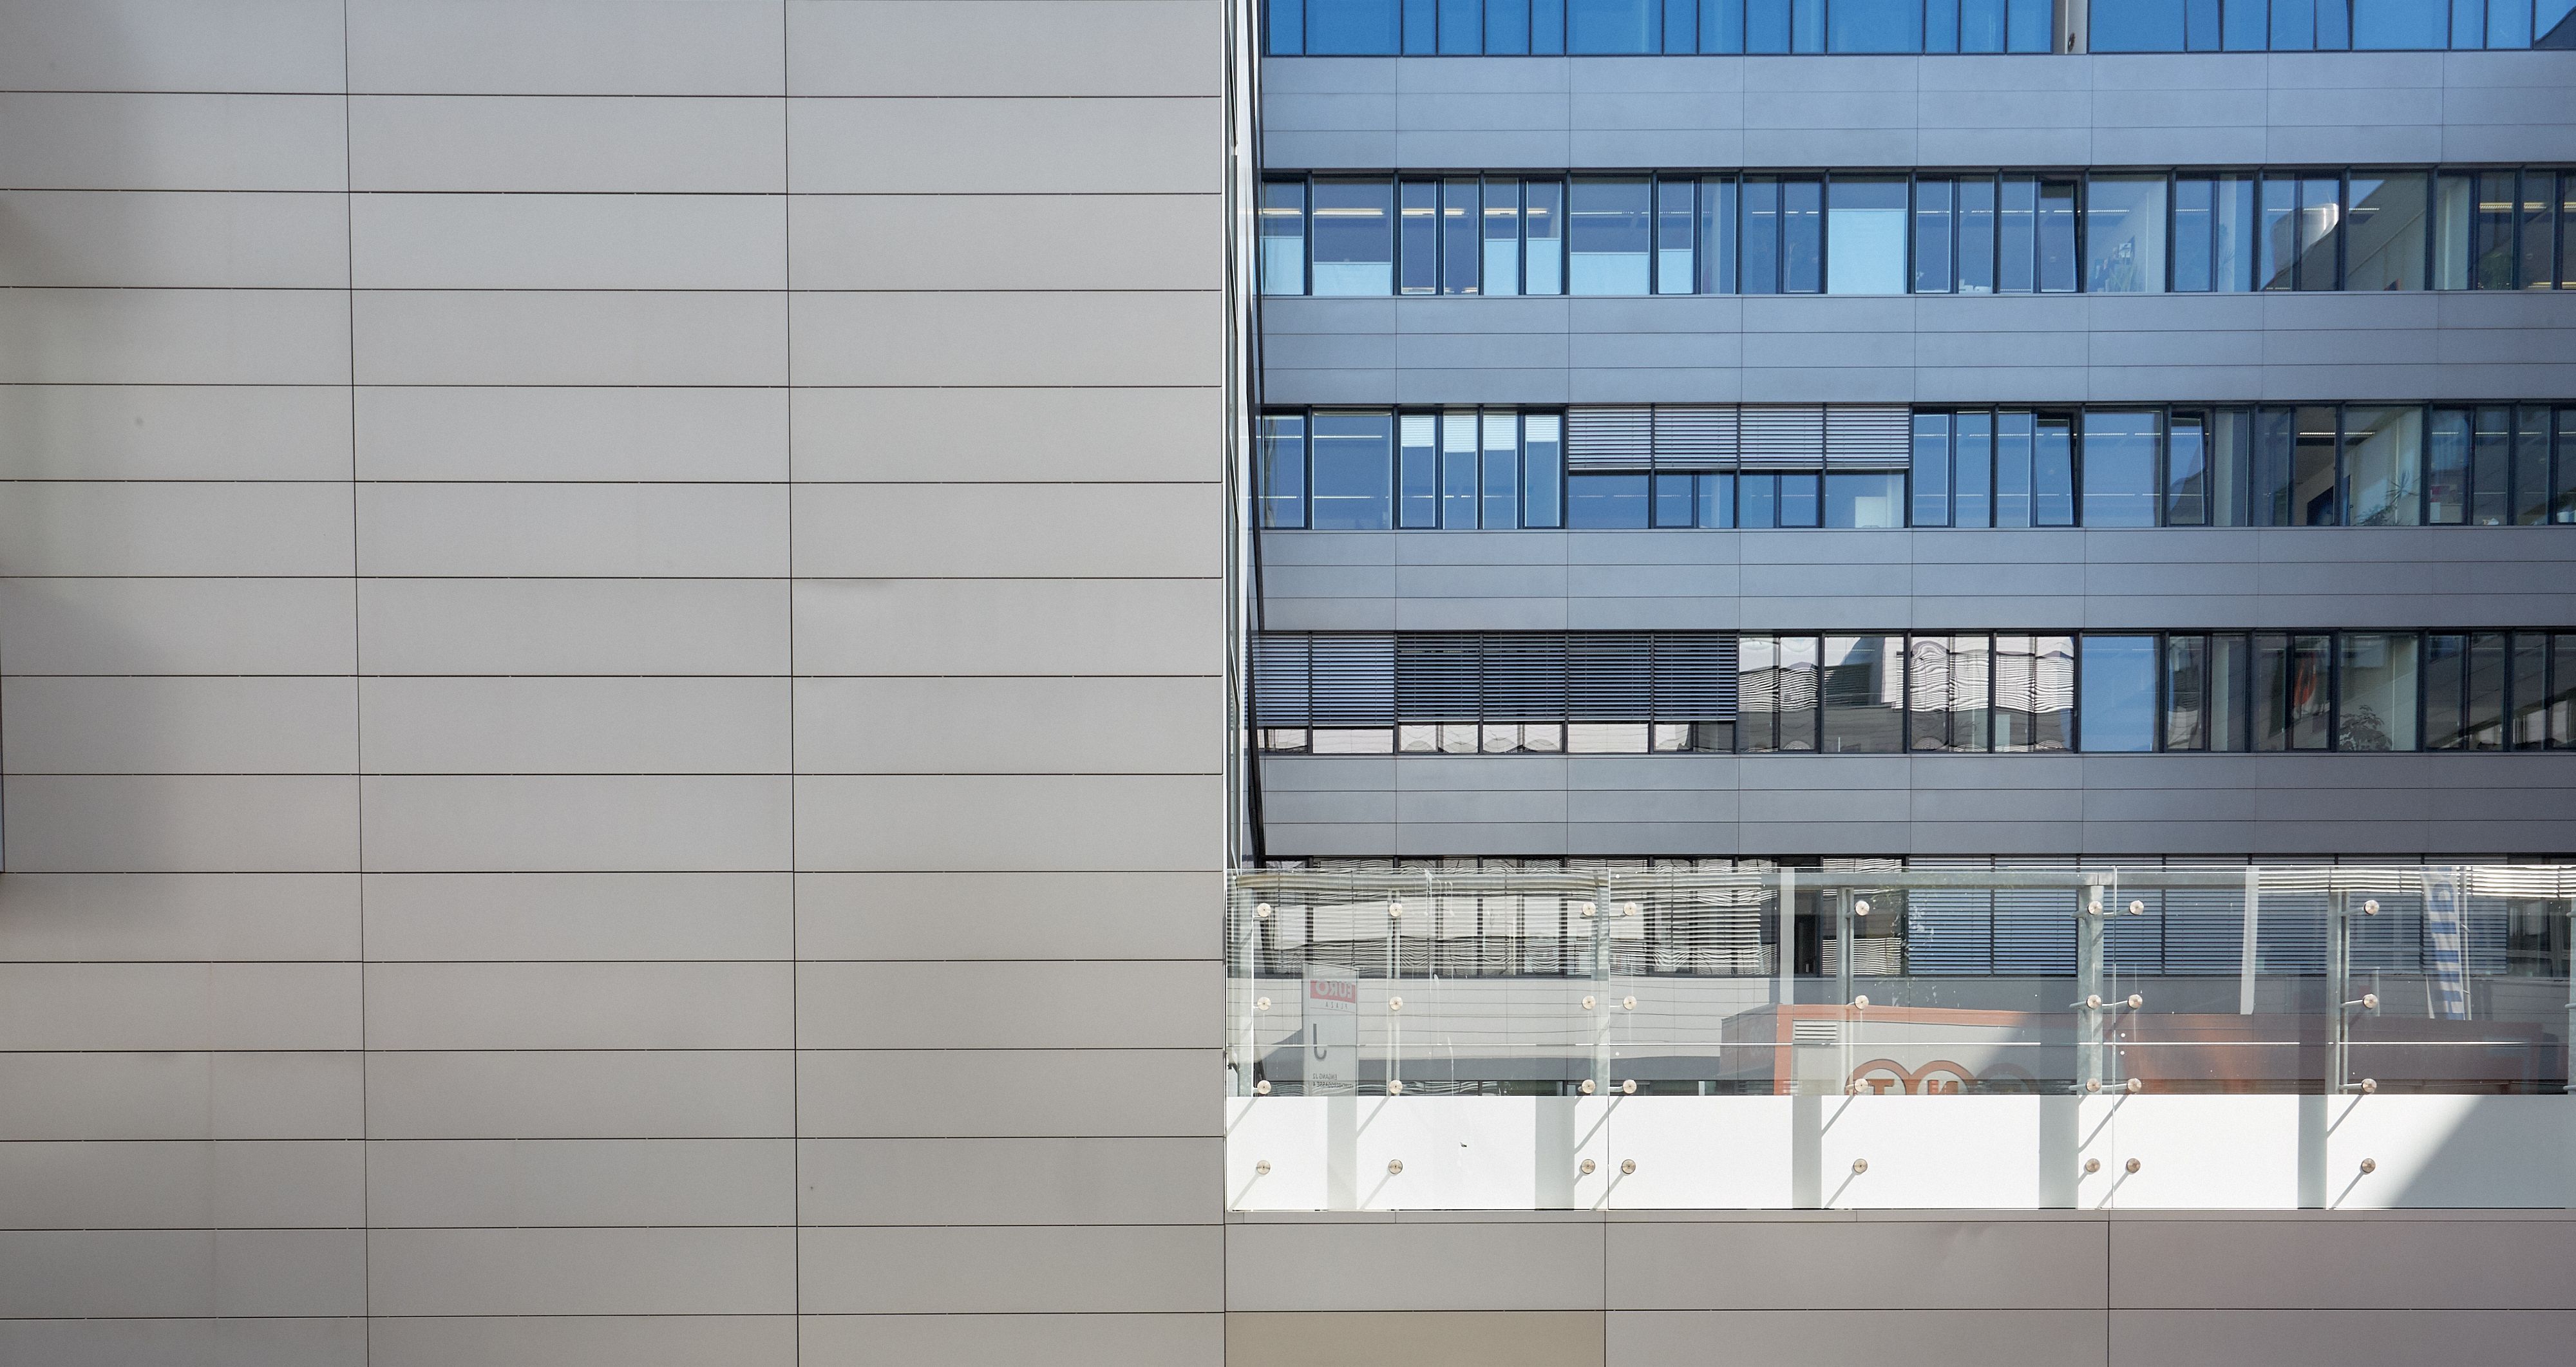 Foto: mehrere Fensterreihen eines modernen Bürogebäudes im Kontrast zu einer gekachelten Wand, die die linke Seite des Bildes einnimmt  